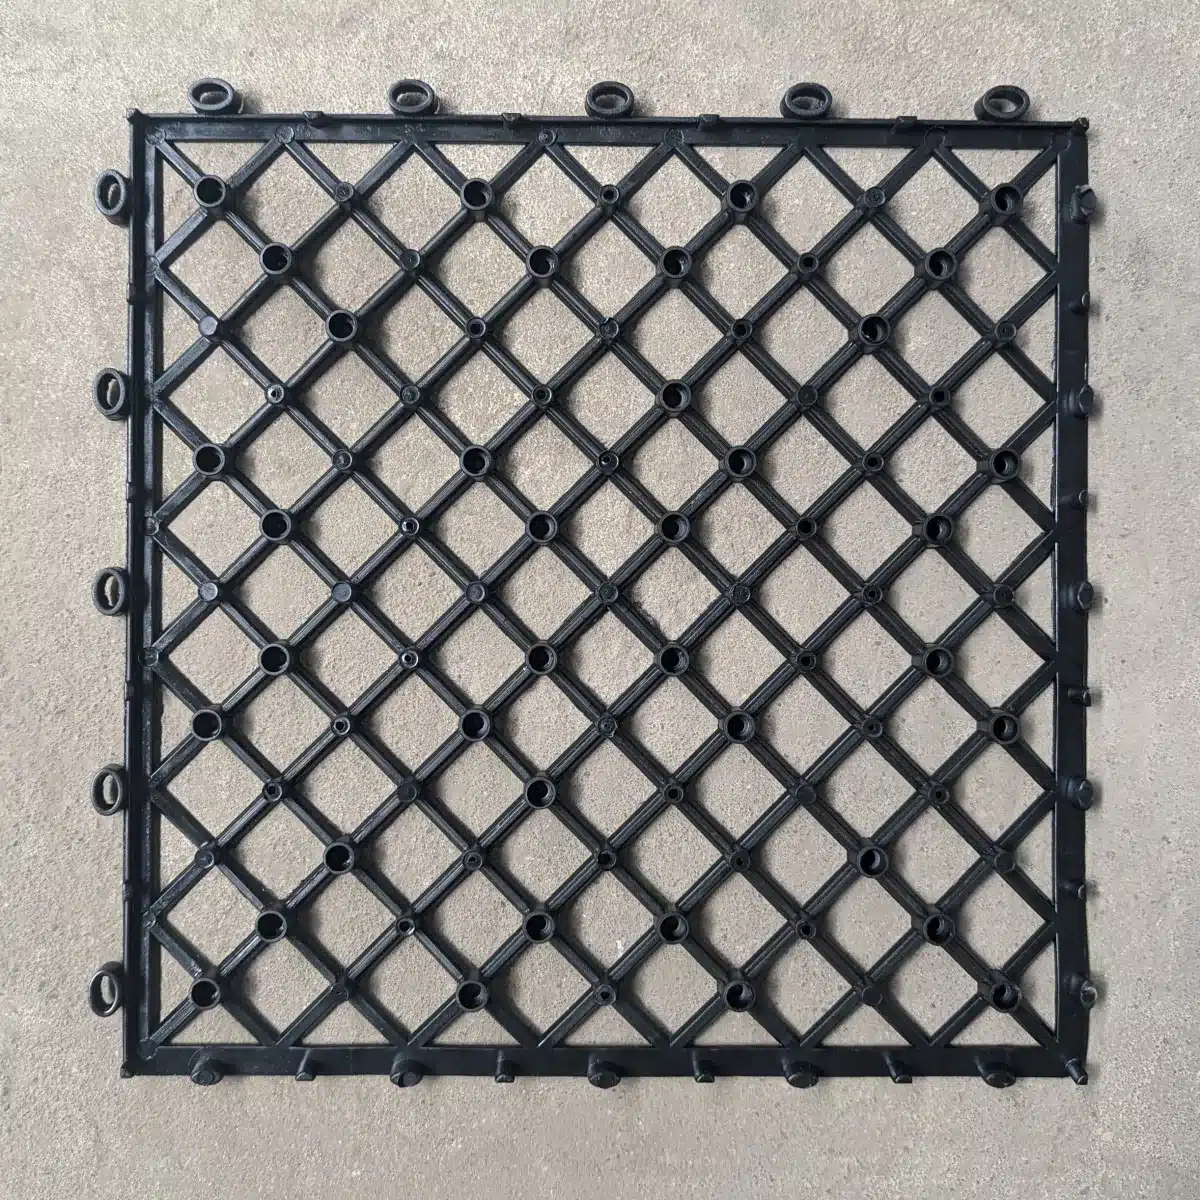 Gitter und Unterkonstruktion für Holzfliesen, 30 x 30cm